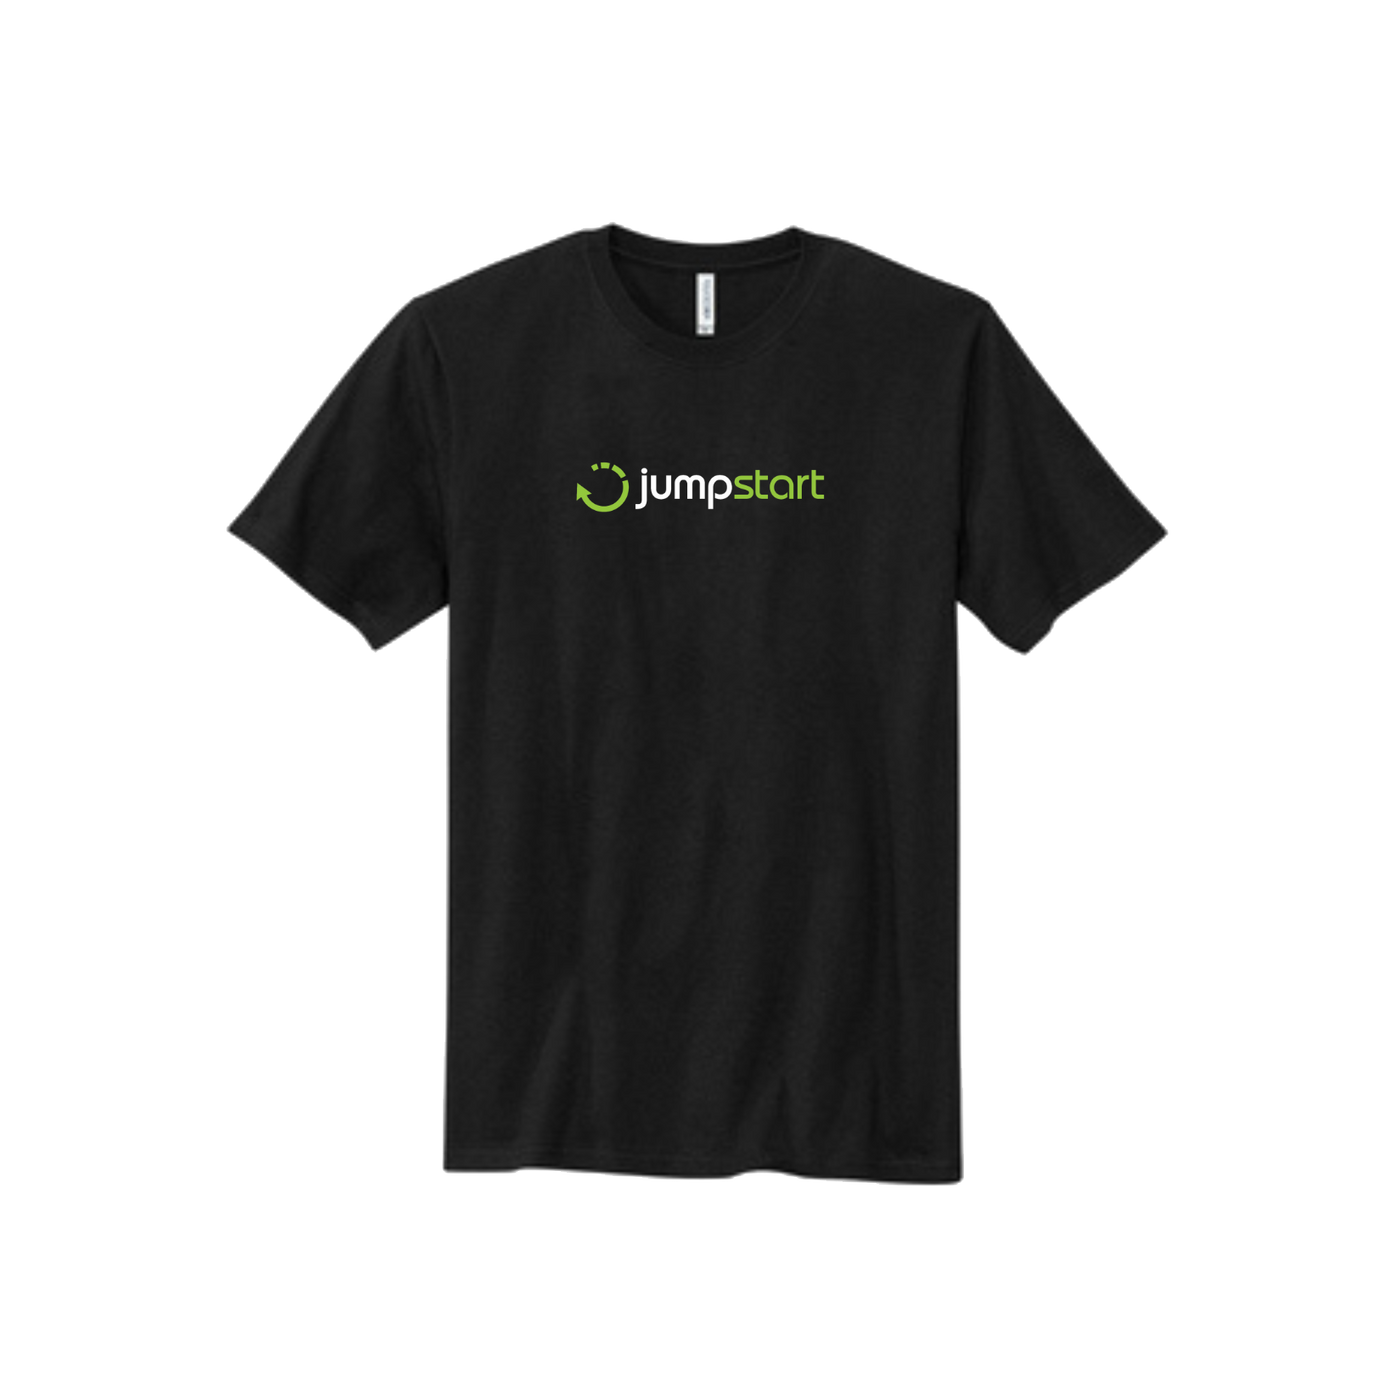 GM Jumpstart ERG USA Made T-Shirt